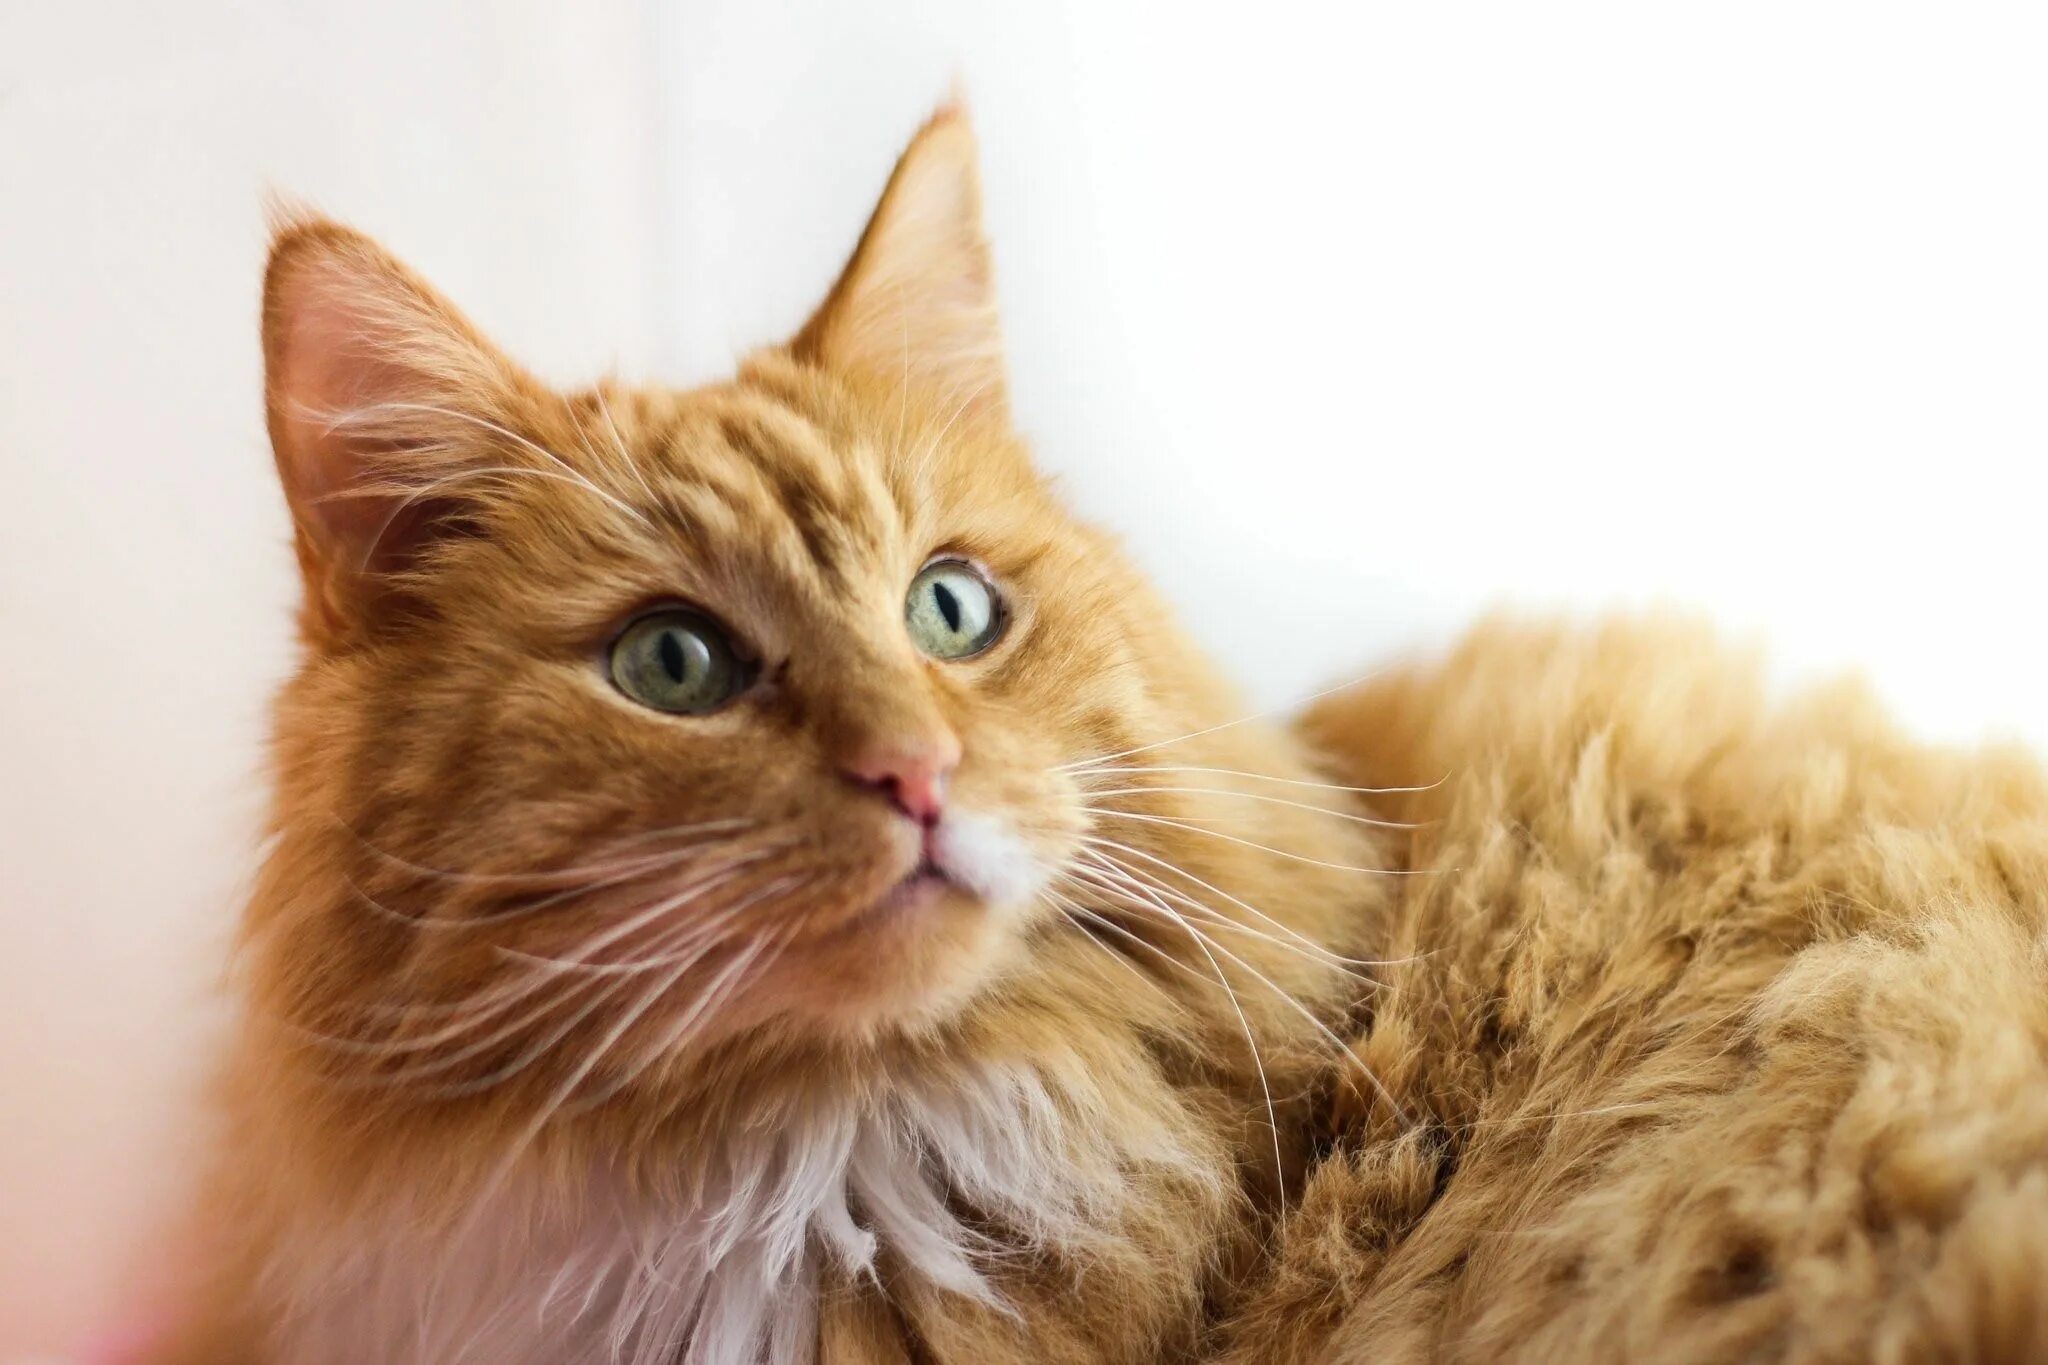 Норвежская Лесная кошка рыжая. Норвежский Лесной кот рыжий. Норвежская длинношерстная Лесная кошка. Порода кошек Норвежская Лесная рыжая. Порода кошек с рыжей шерстью